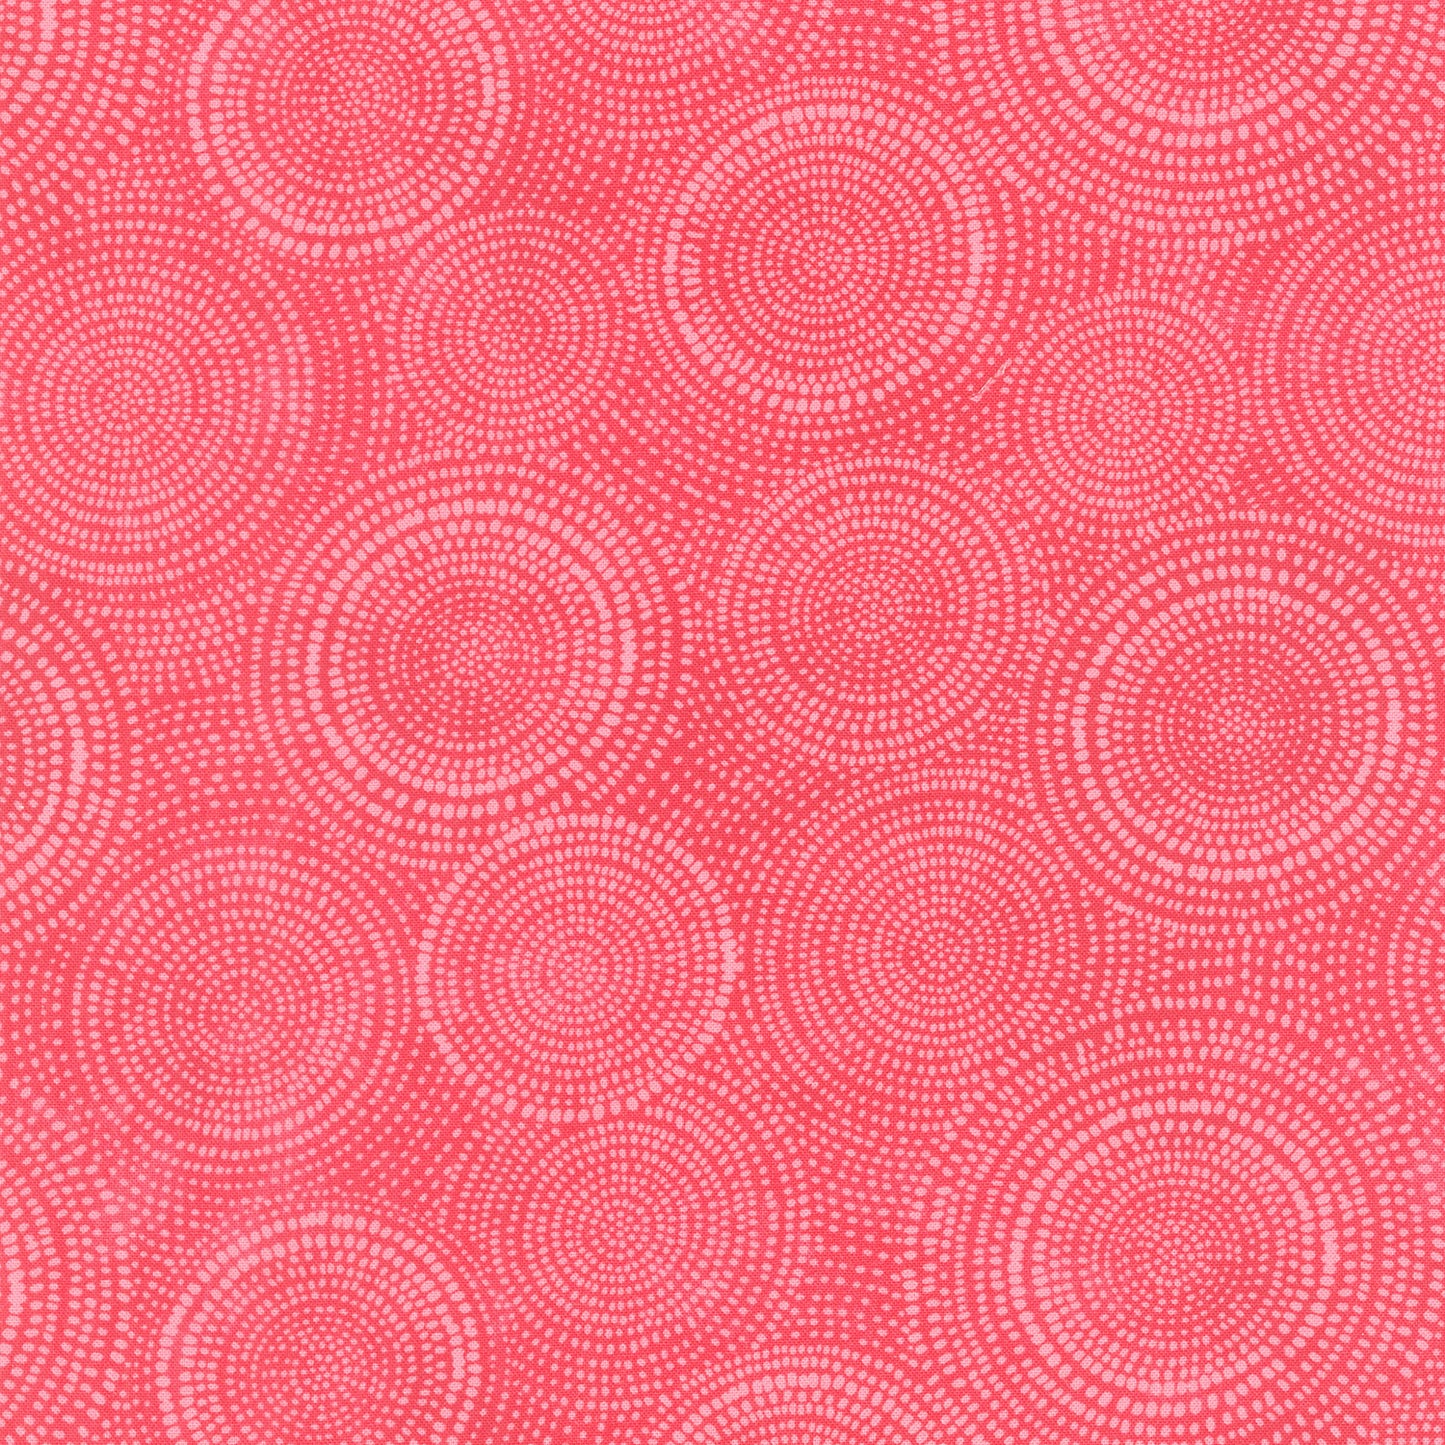 Radiance - Circle Dots Watermelon Yardage Primary Image